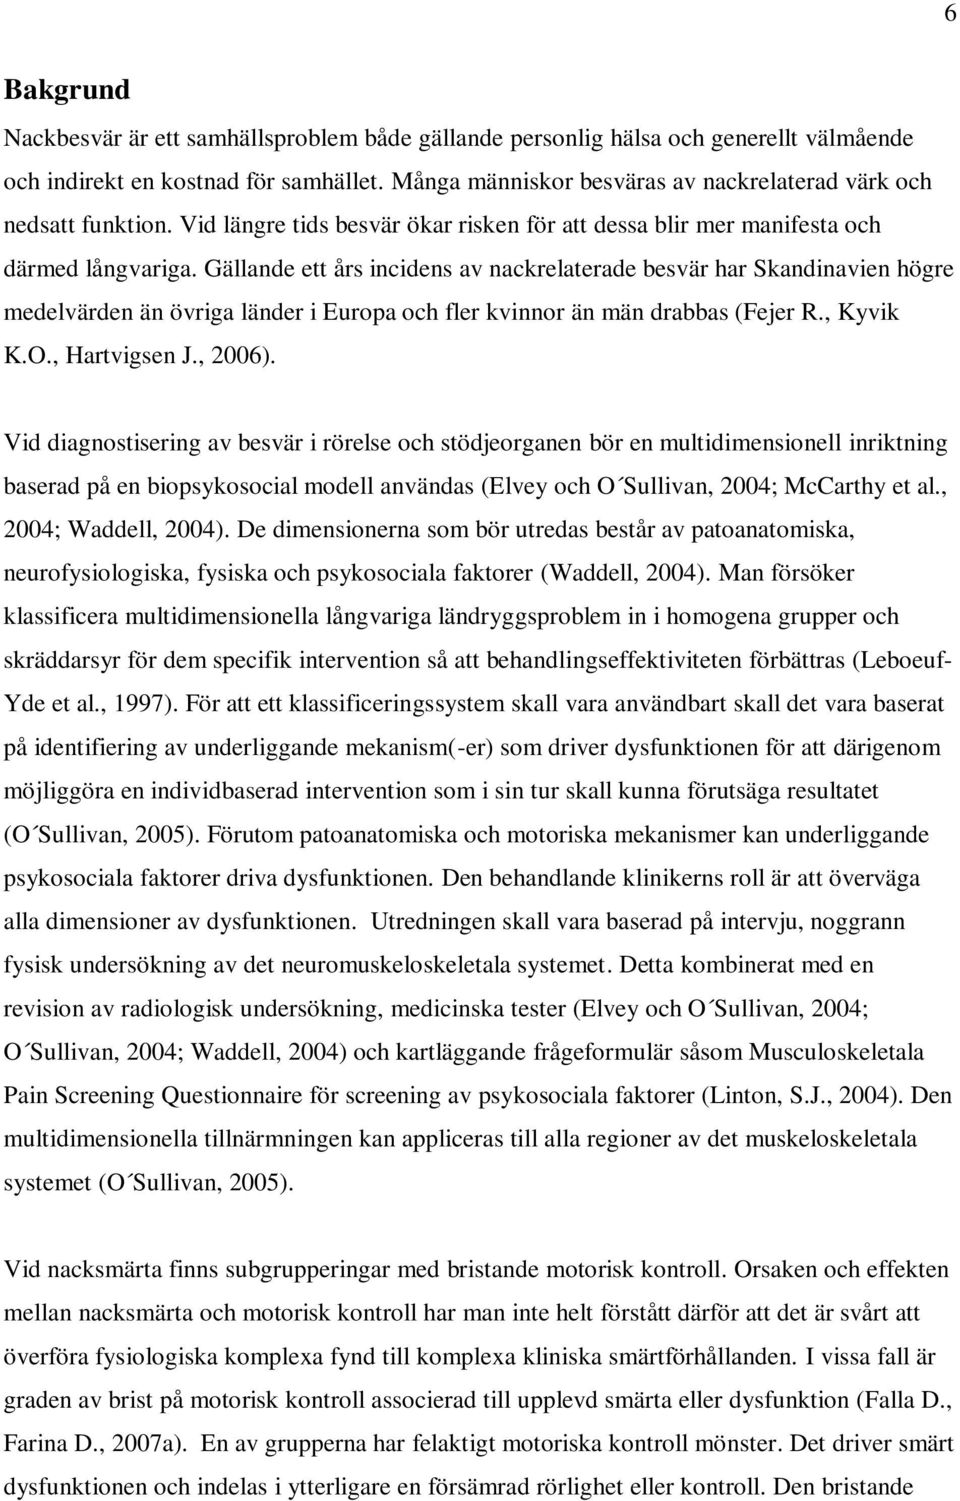 Gällande ett års incidens av nackrelaterade besvär har Skandinavien högre medelvärden än övriga länder i Europa och fler kvinnor än män drabbas (Fejer R., Kyvik K.O., Hartvigsen J., 2006).